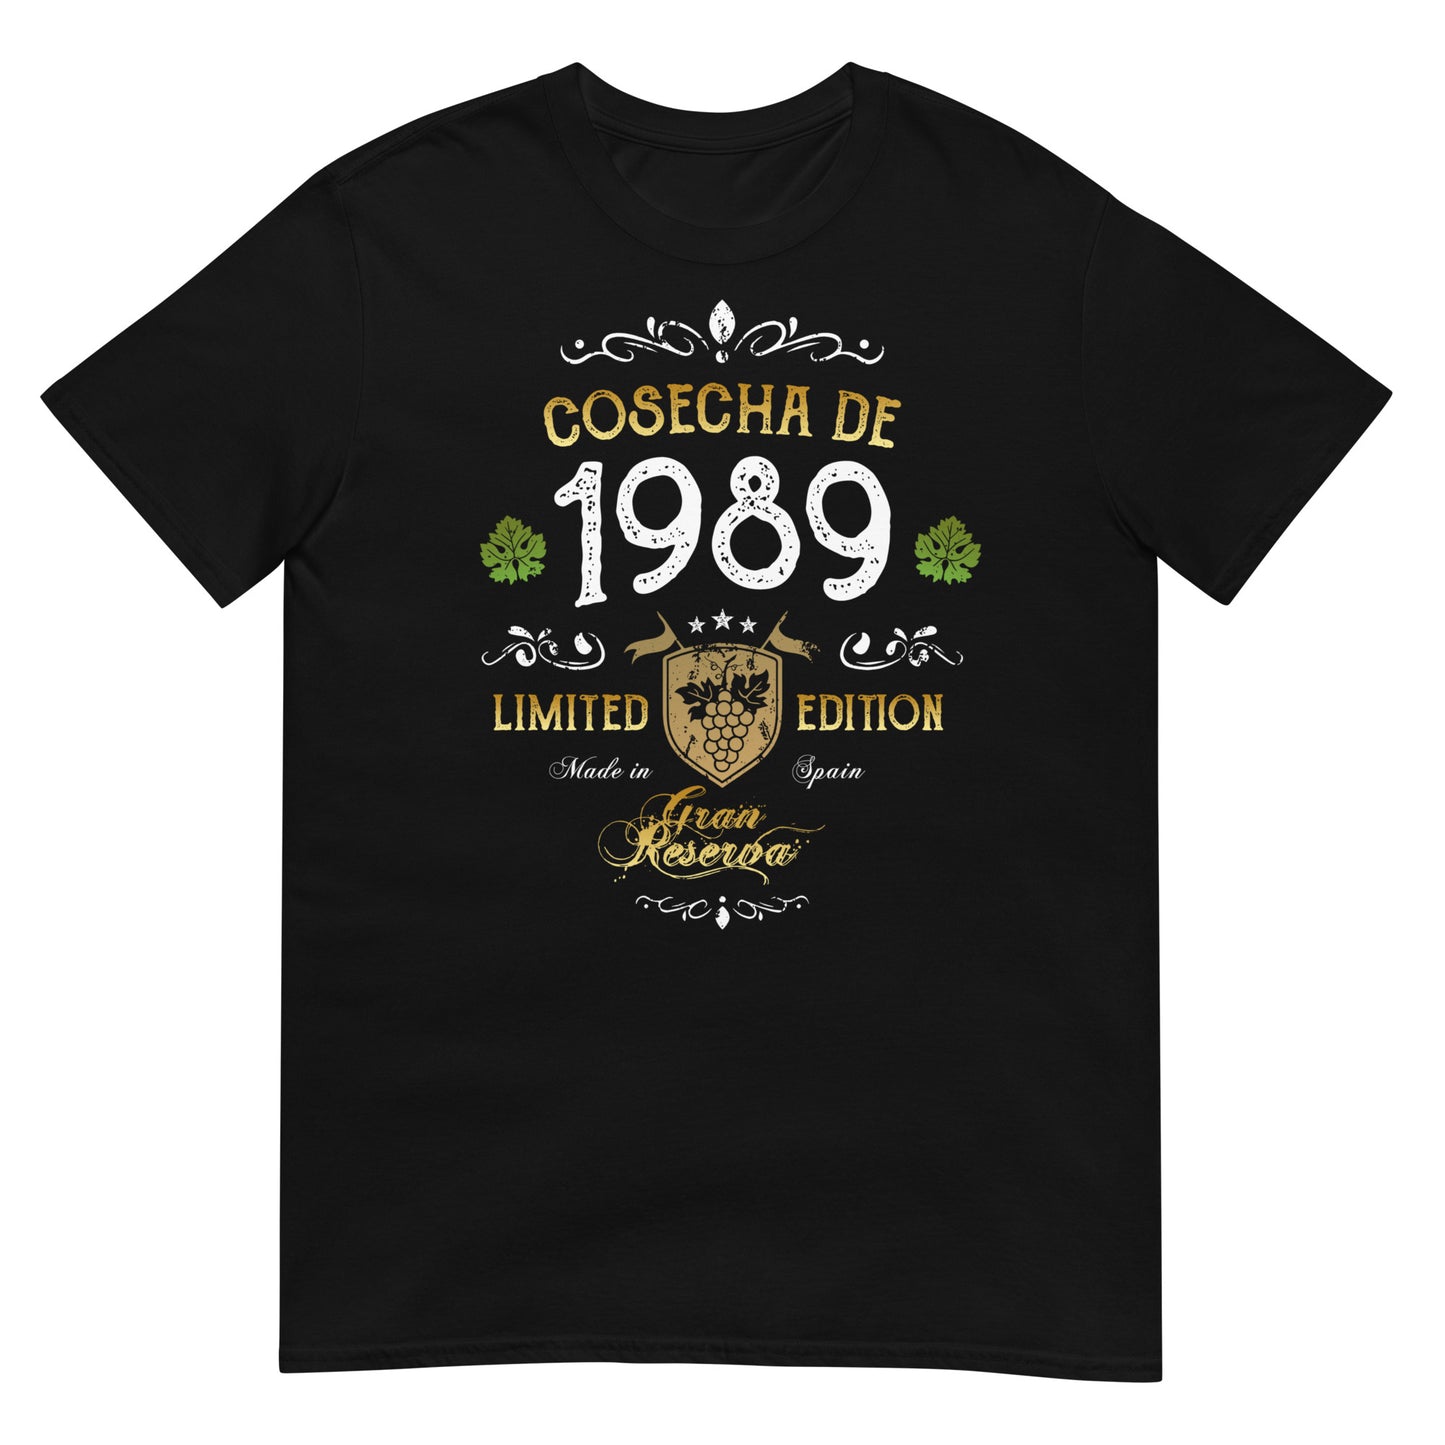 Camiseta Cosecha de 1989 - Cumpleaños